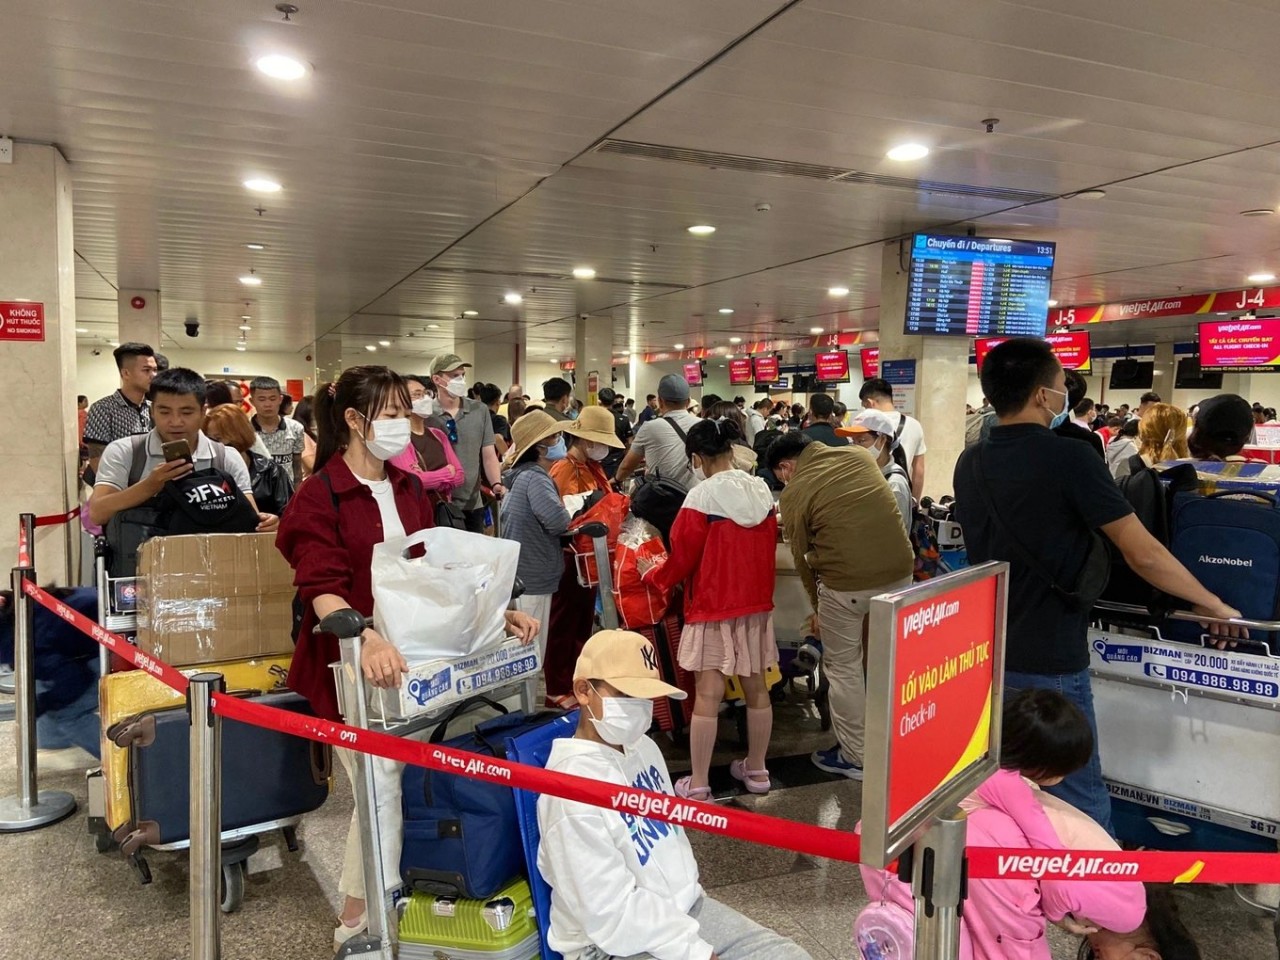 Nhu cầu đi lại tăng cao trước kỳ nghỉ Tết, sân bay Tân Sơn Nhất ‘vỡ trận’ dù lượng khách chưa đạt đỉnh